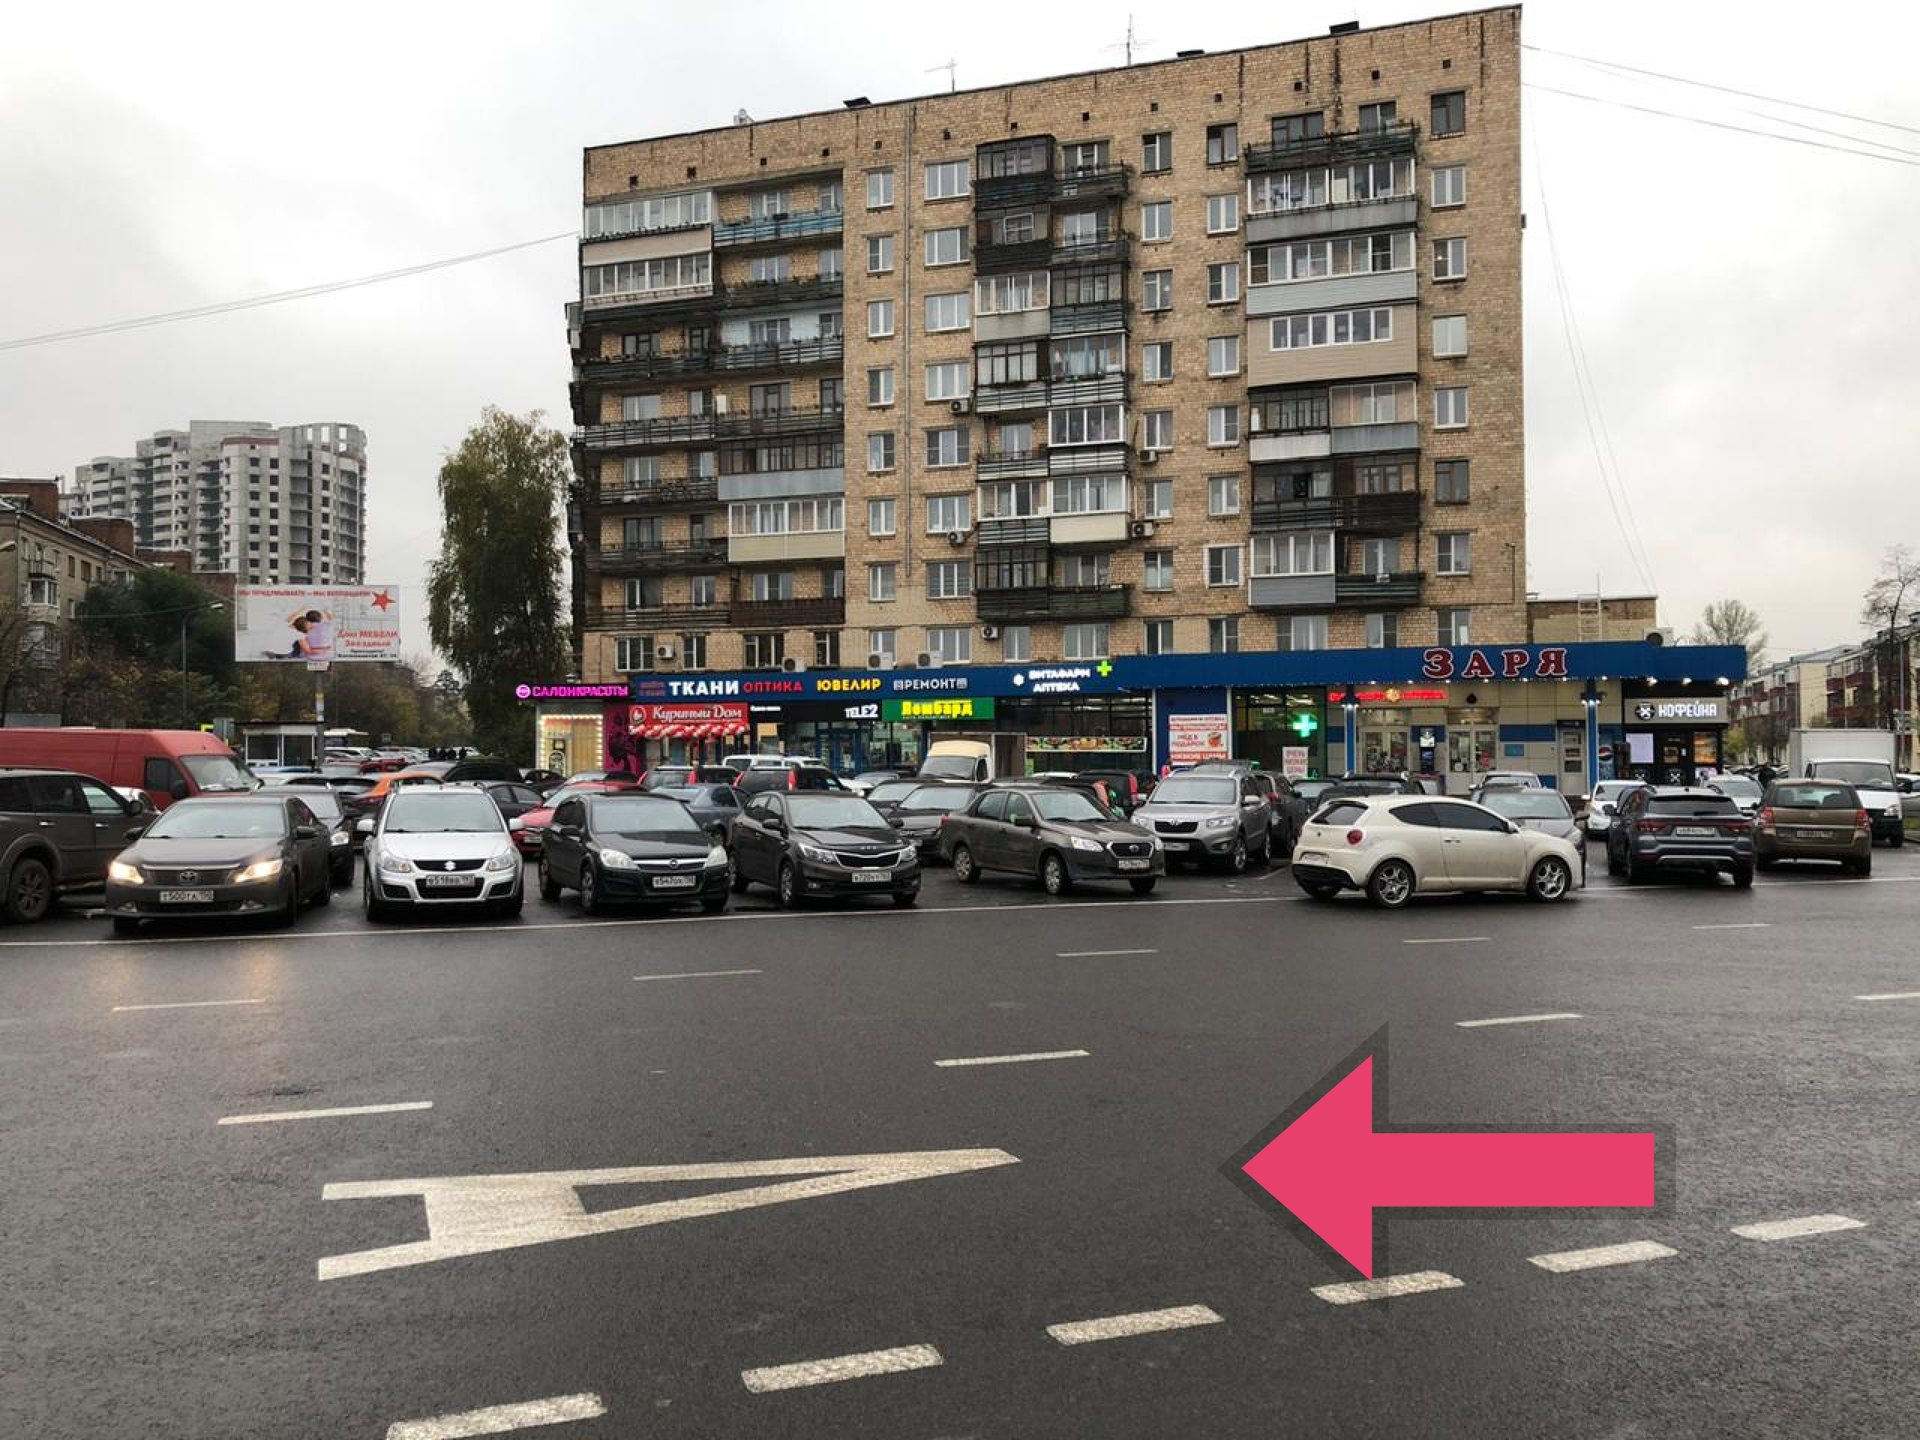 Со станции Подлипки-Дачные, выход на улицу Коминтерна. Ориентир - магазин "Заря", поверните налево, не переходя дорогу.